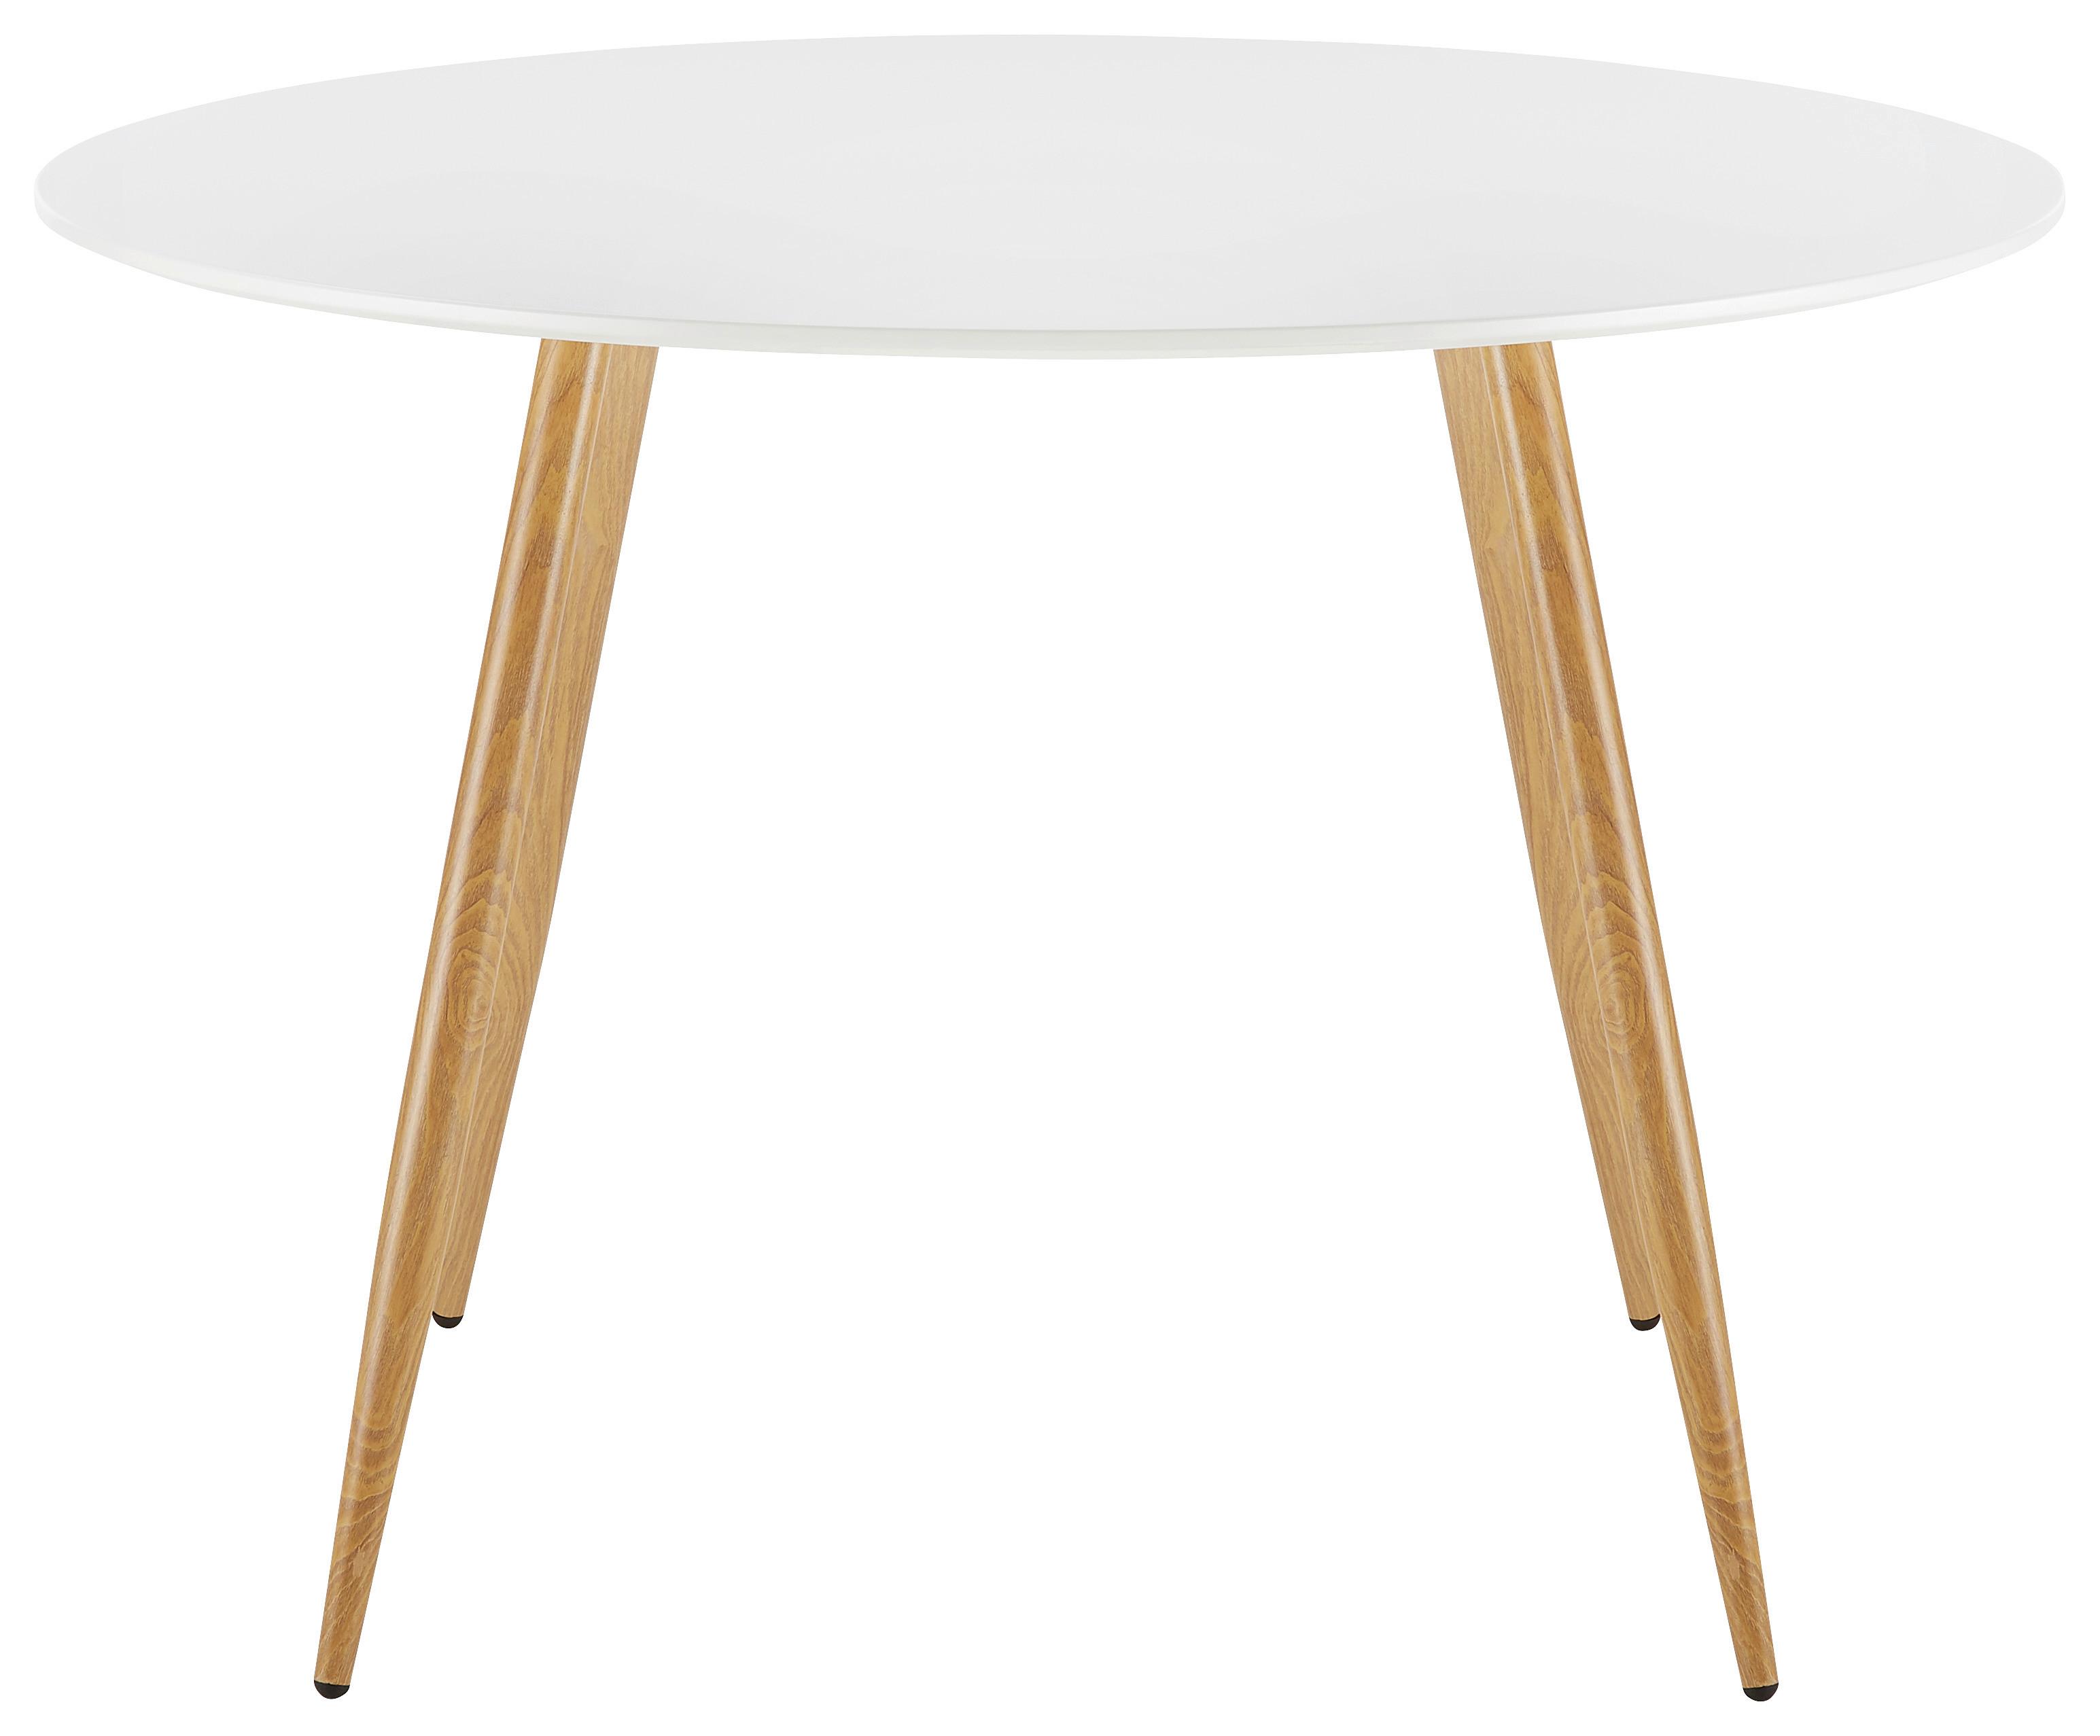 Jídelní Stůl John 110x76 Cm - bílá/barvy dubu, Moderní, kov/dřevo (110/76cm) - Modern Living